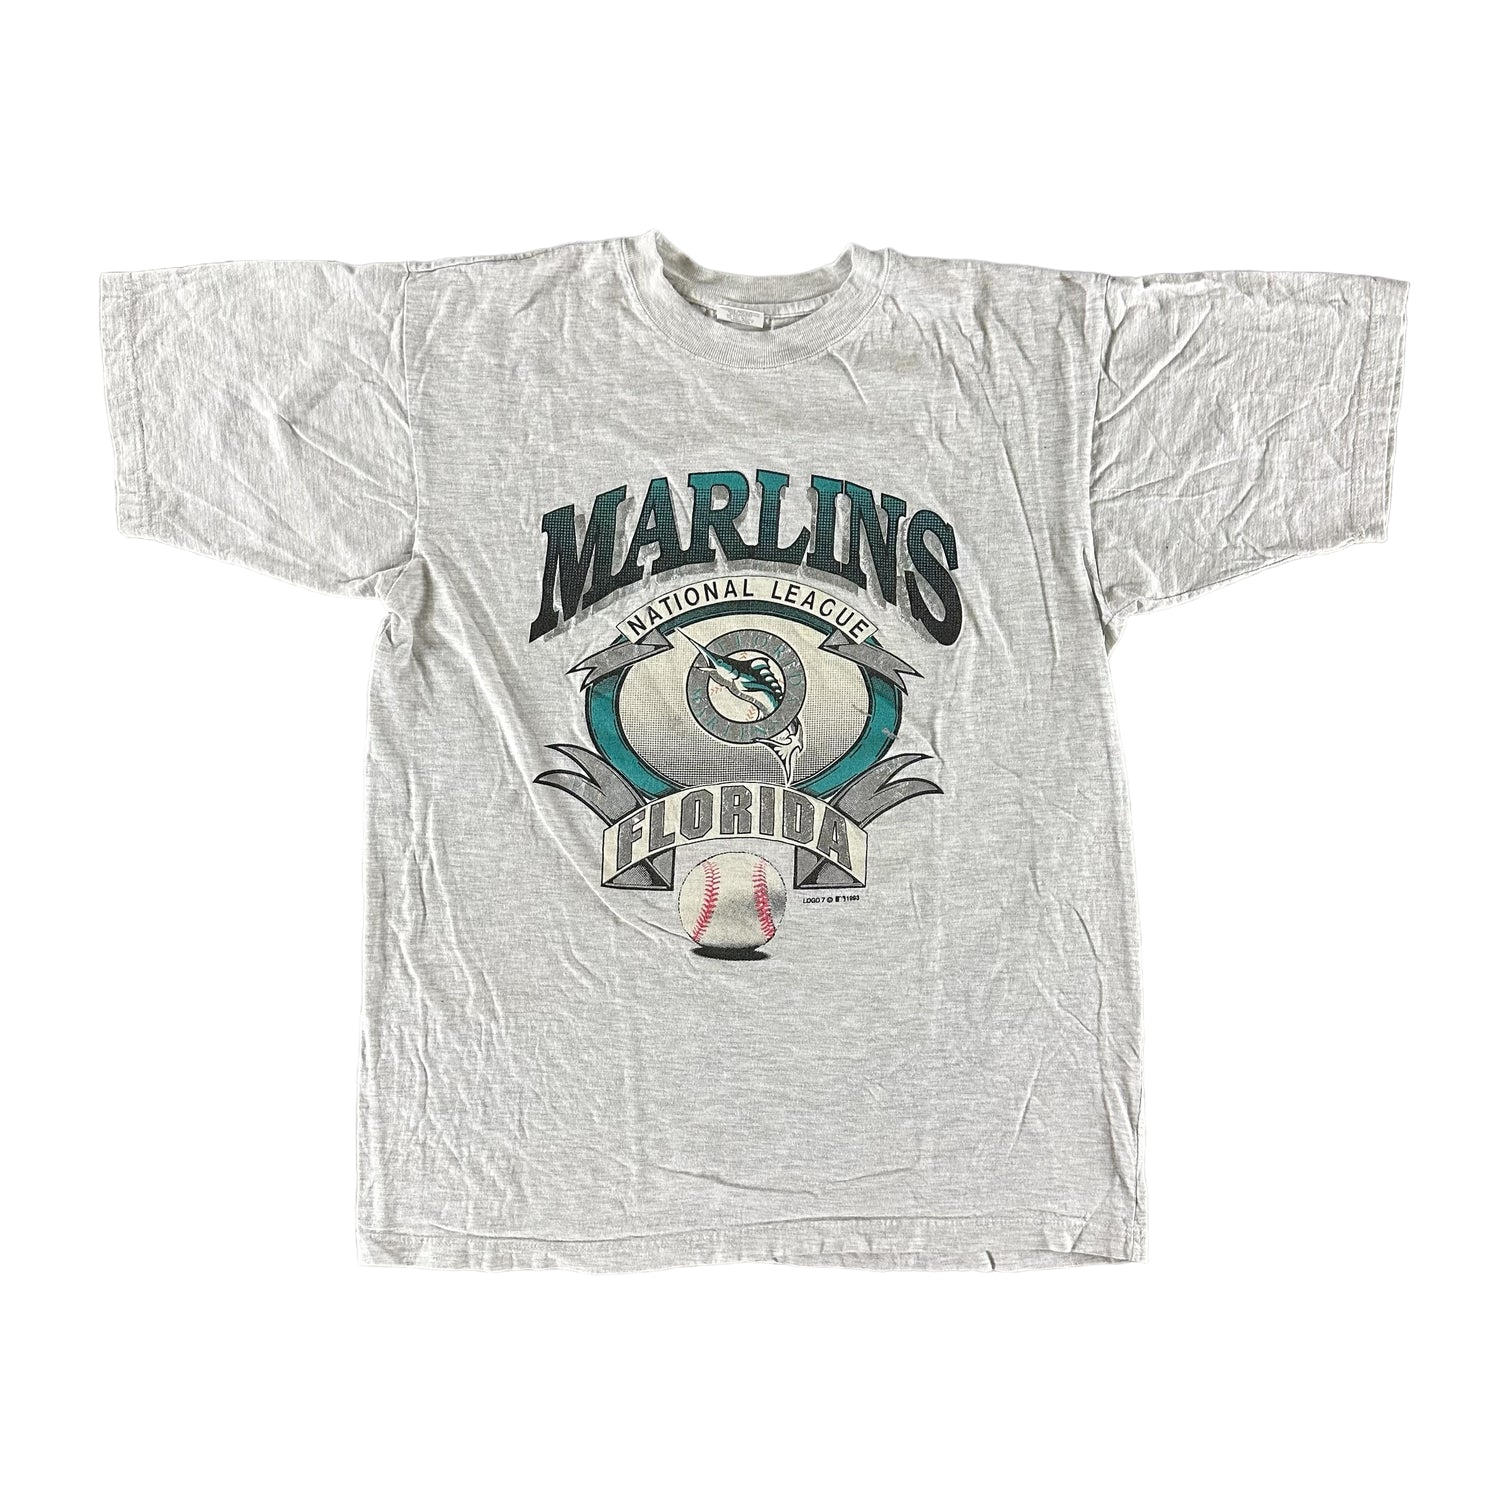 Vintage 1993 Florida Marlins T-shirt size Large